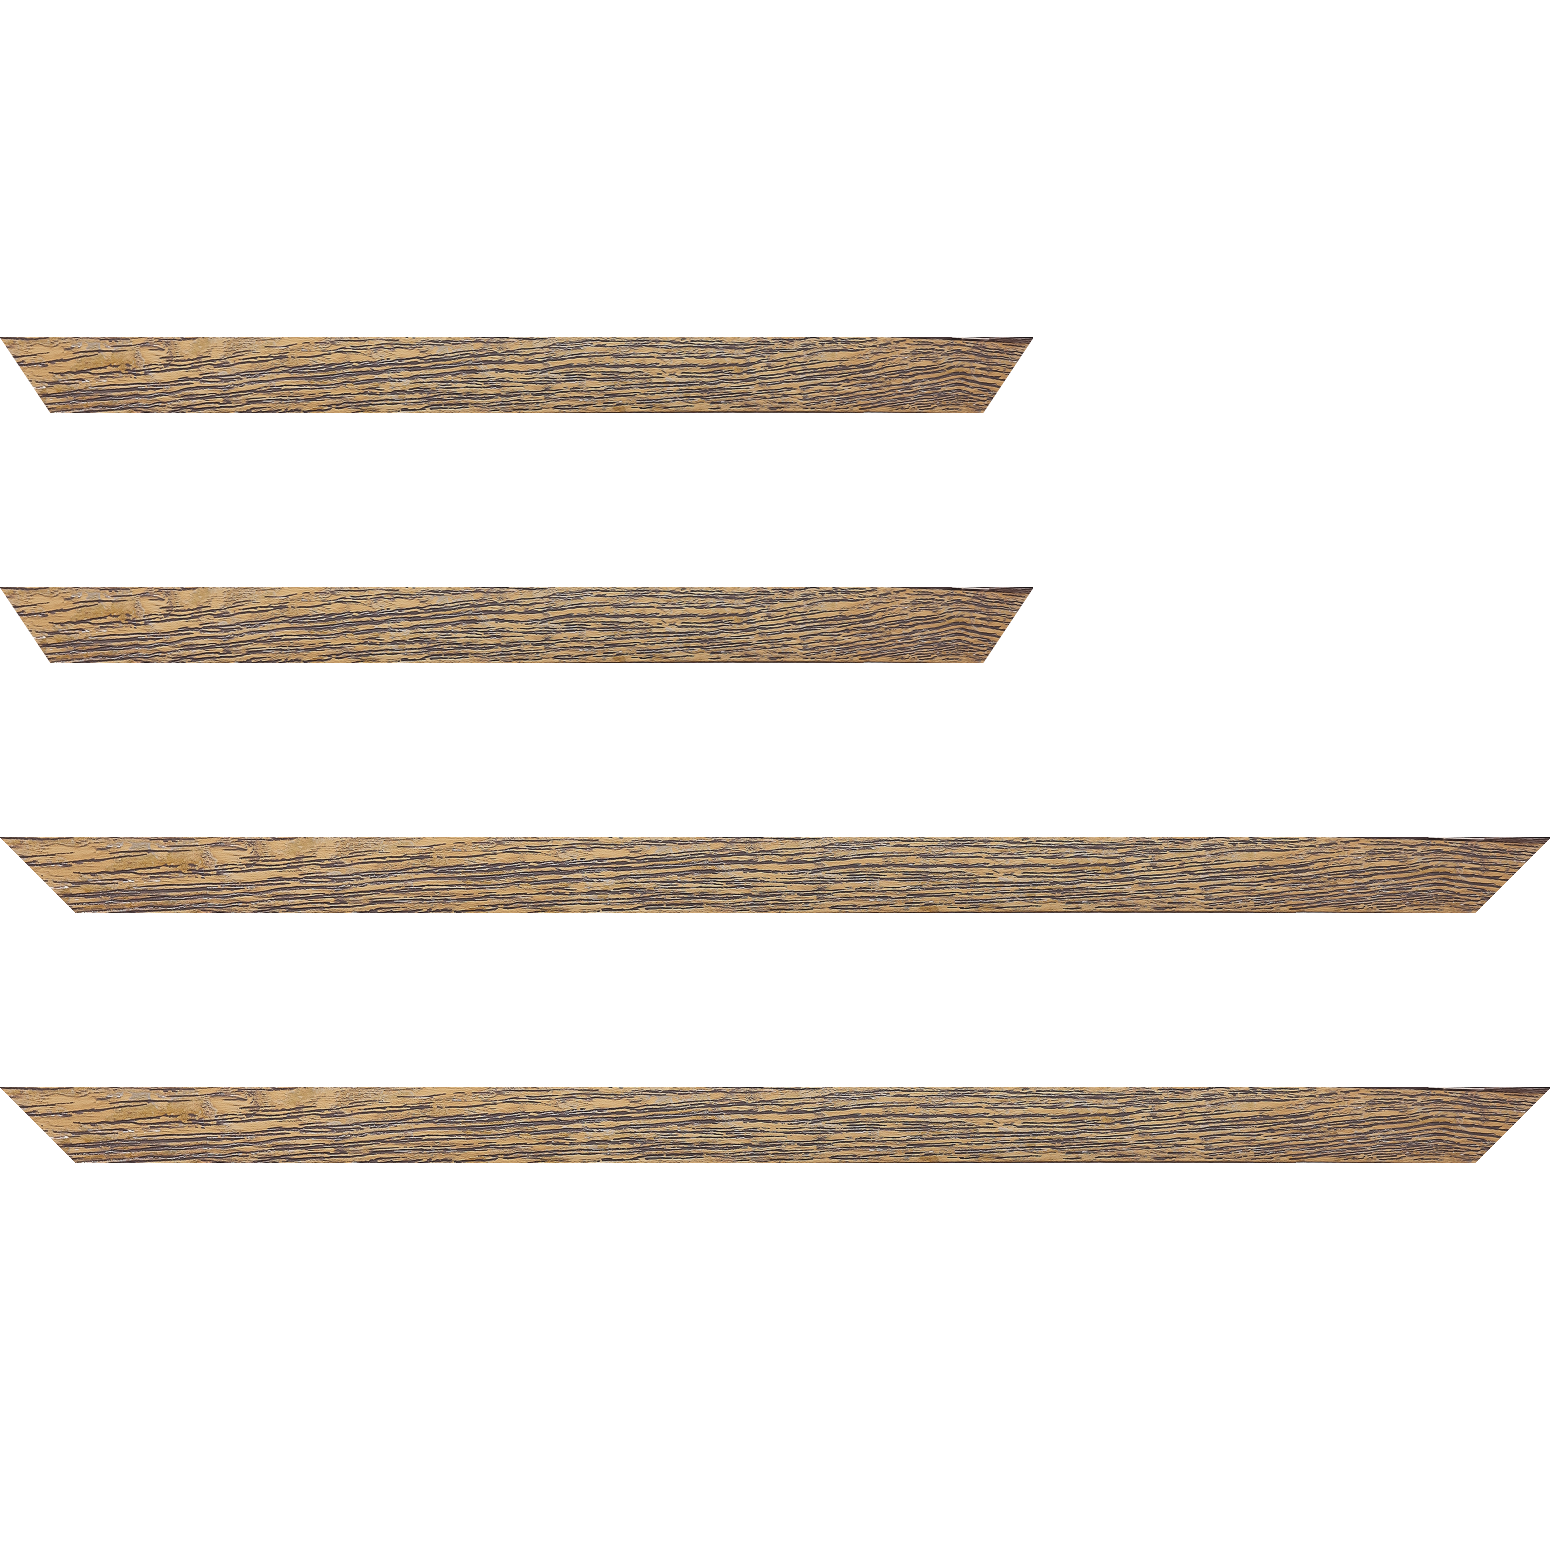 Baguette bois profil arrondi en pente plongeant largeur 2.4cm couleur jaune moutarde finition veinée, reflet or - 59.4x84.1